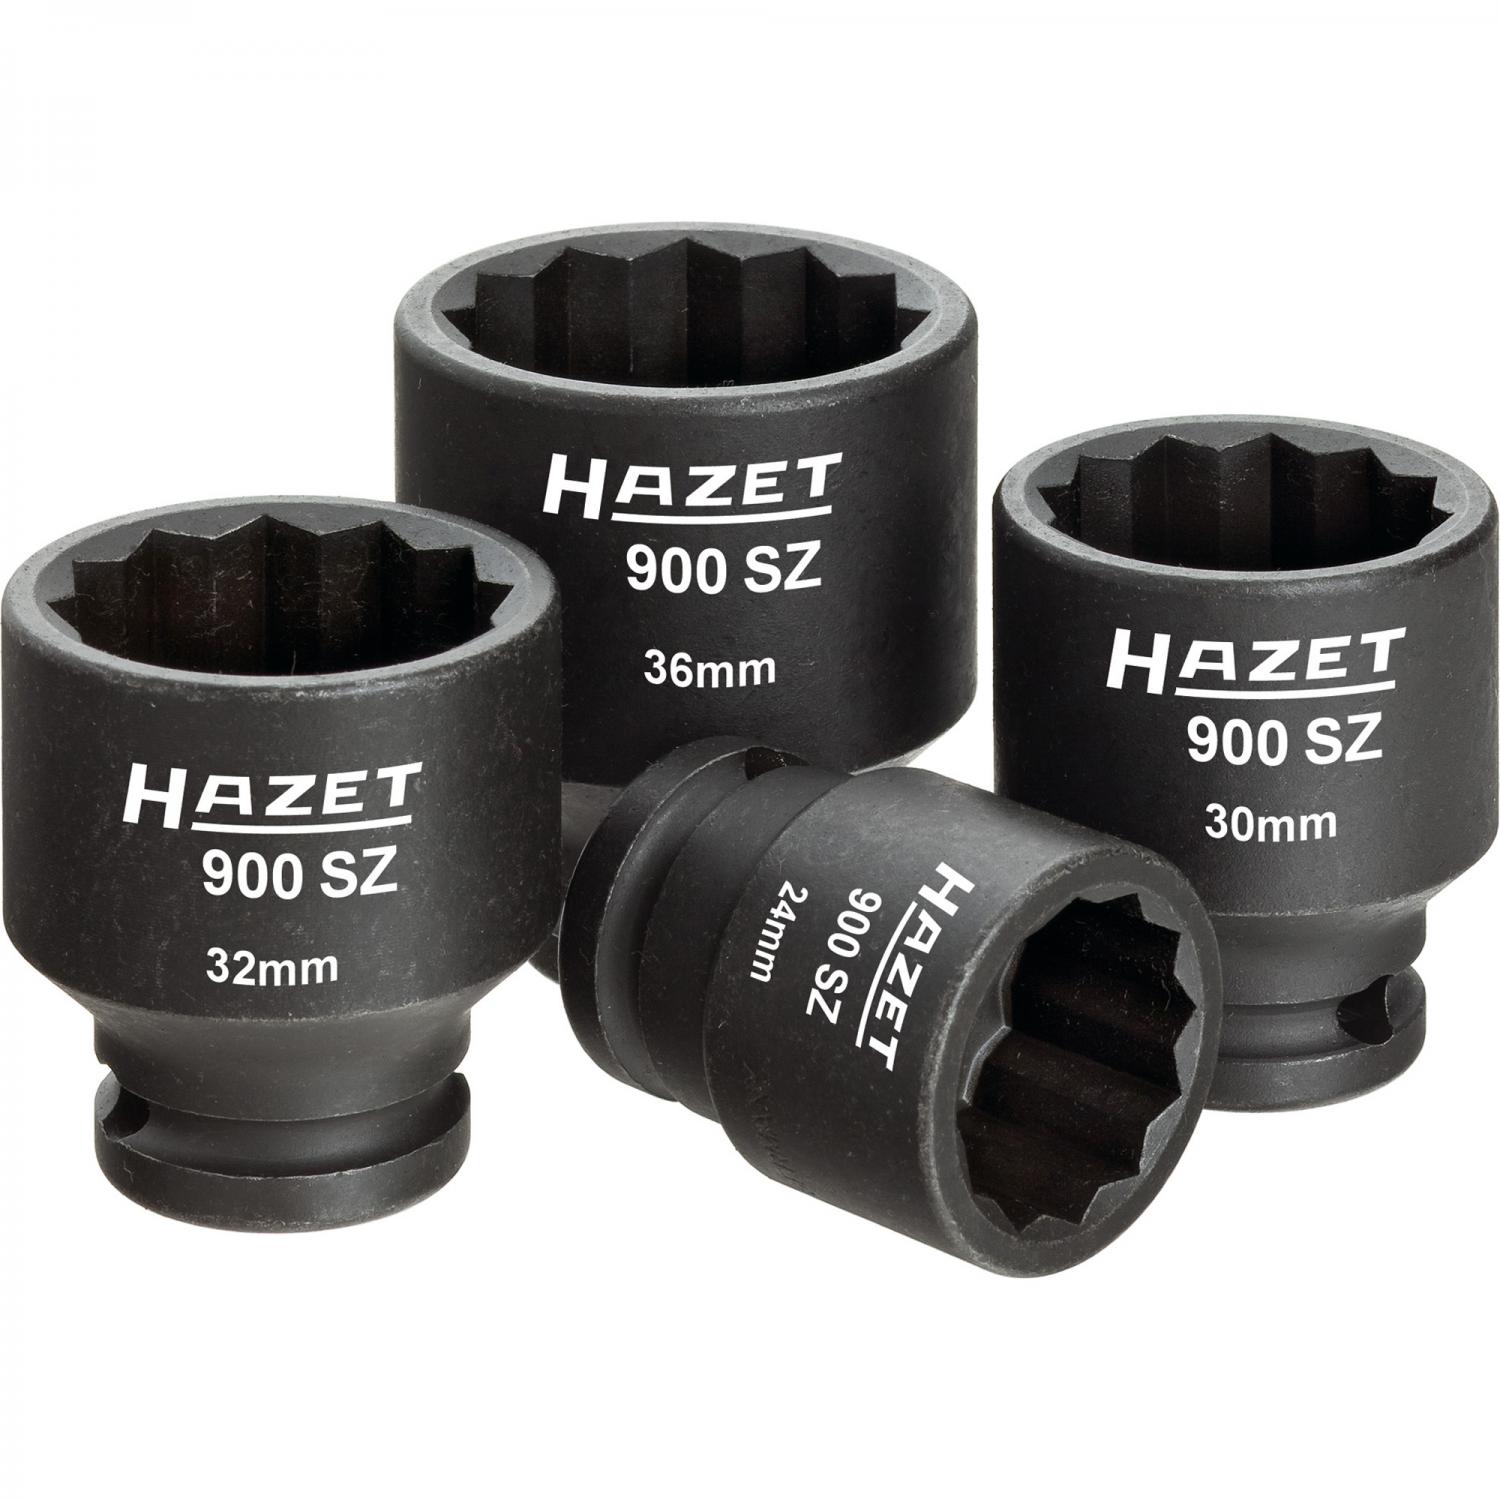 Hazet 900SZ/4 1/2“ drive 12-point impact socket set | 1/2“ Socket Sets